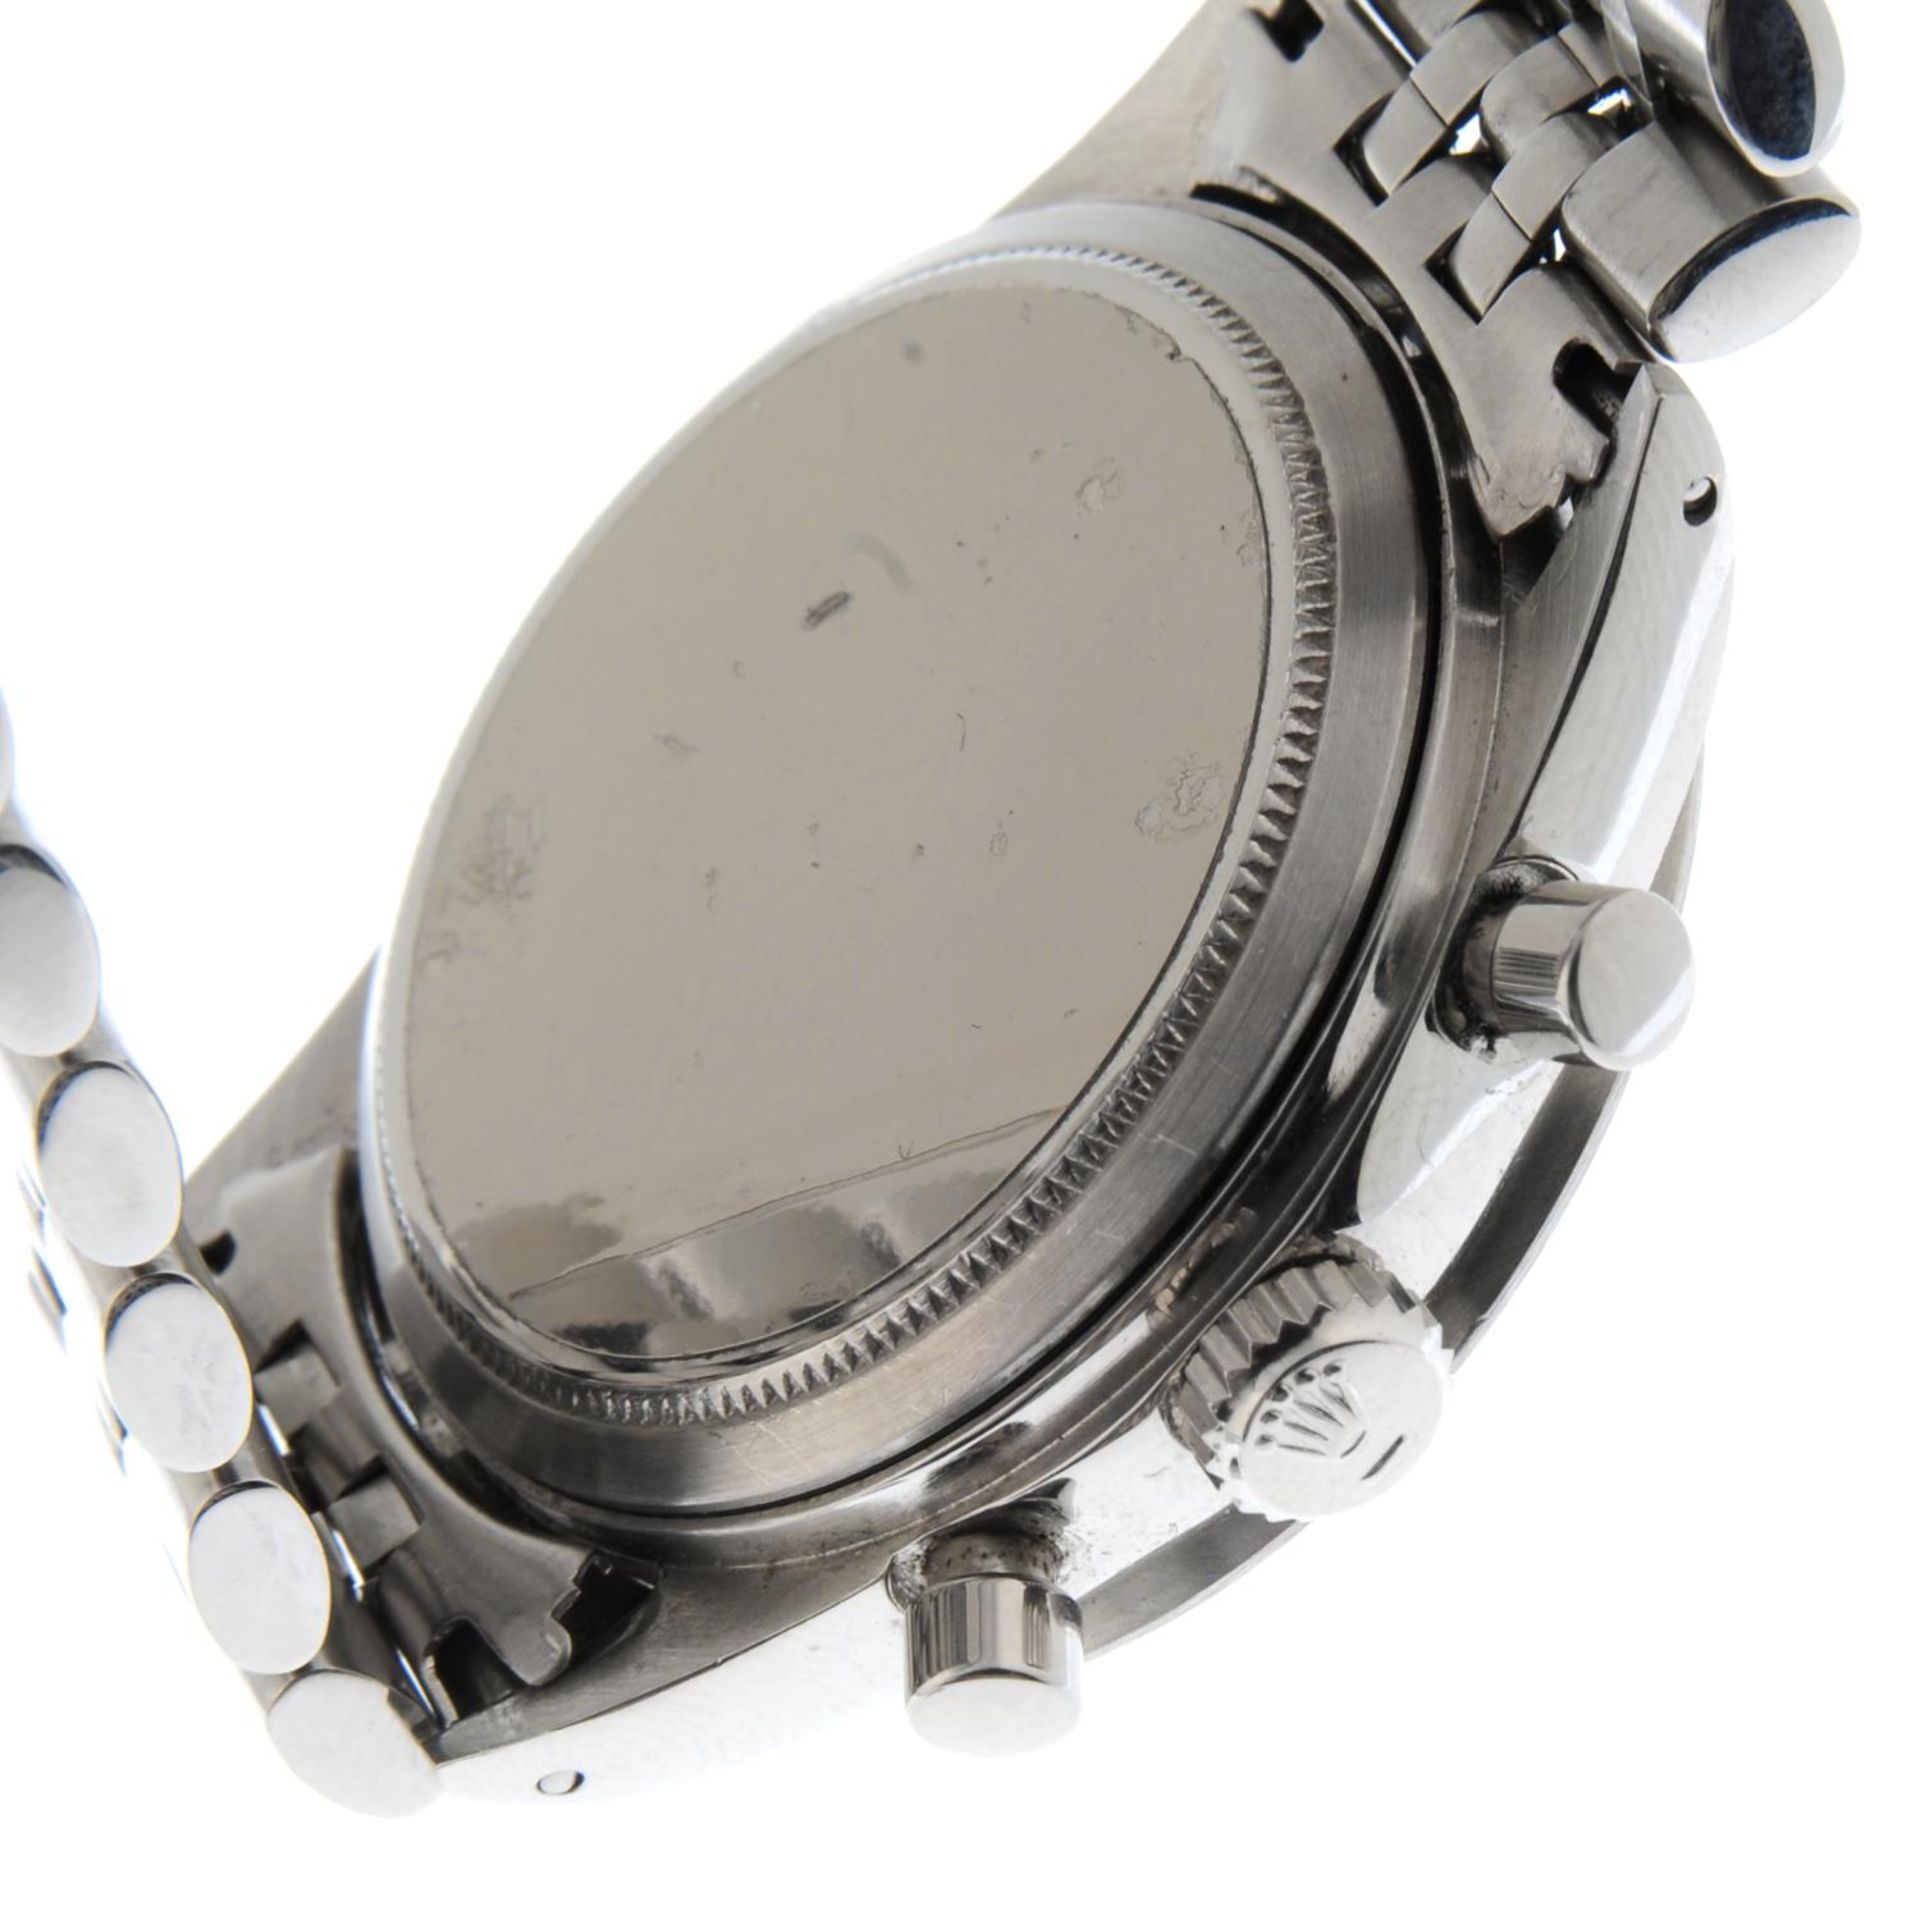 ROLEX - an Oyster Cosmograph Daytona bracelet watch. - Bild 2 aus 5